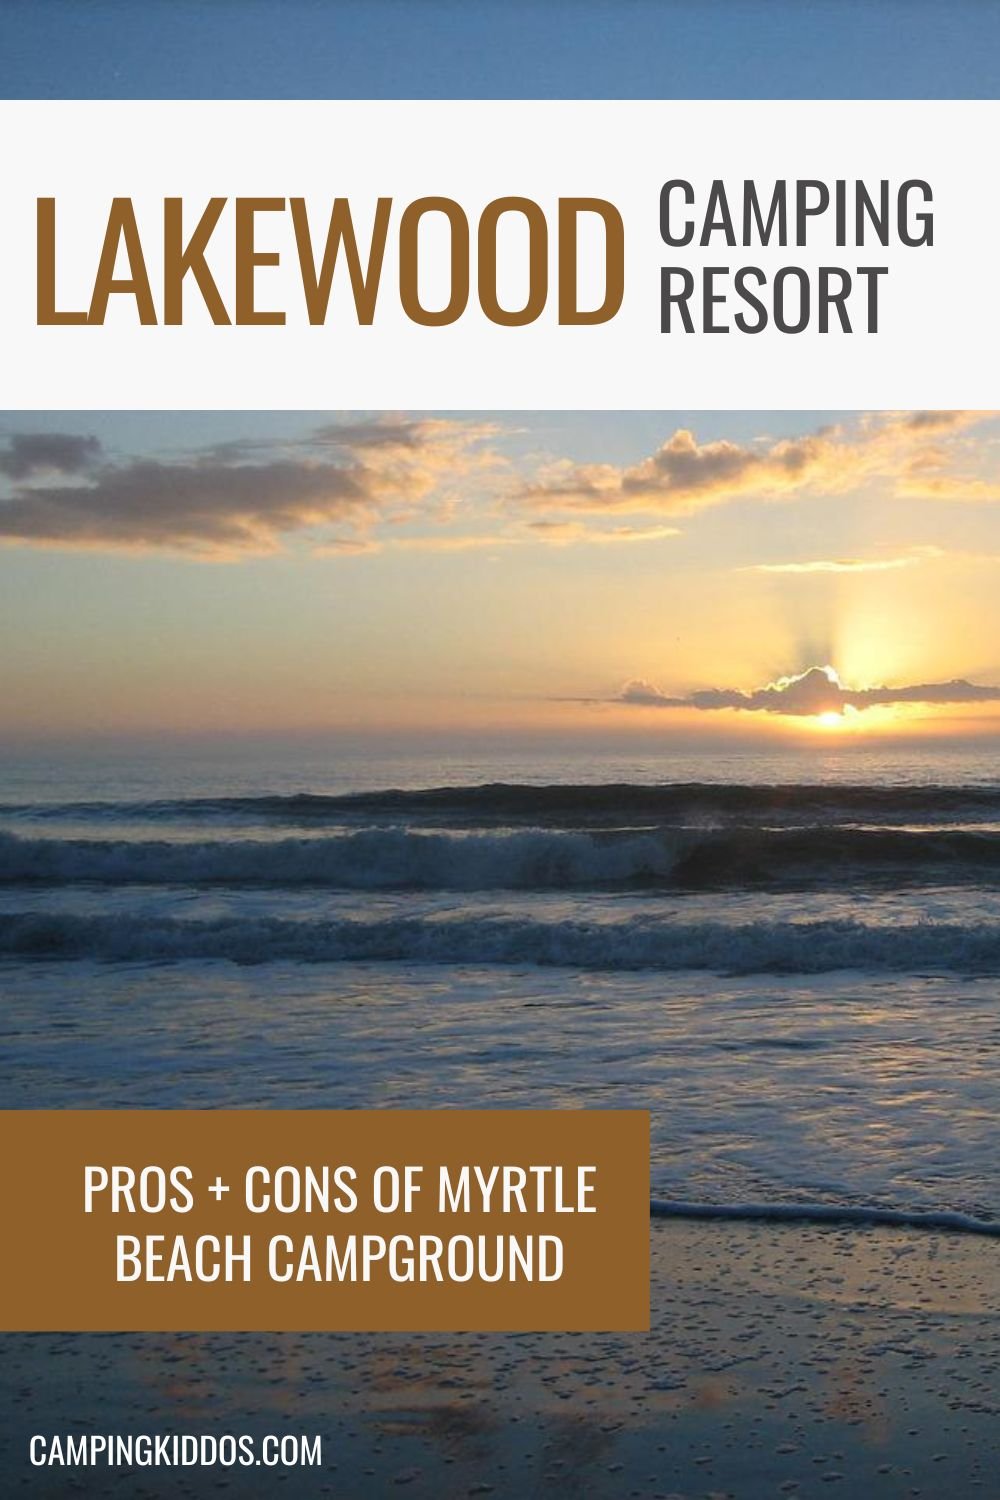 Ice Cream Parlors - Lakewood Camping Resort : Lakewood Camping Resort